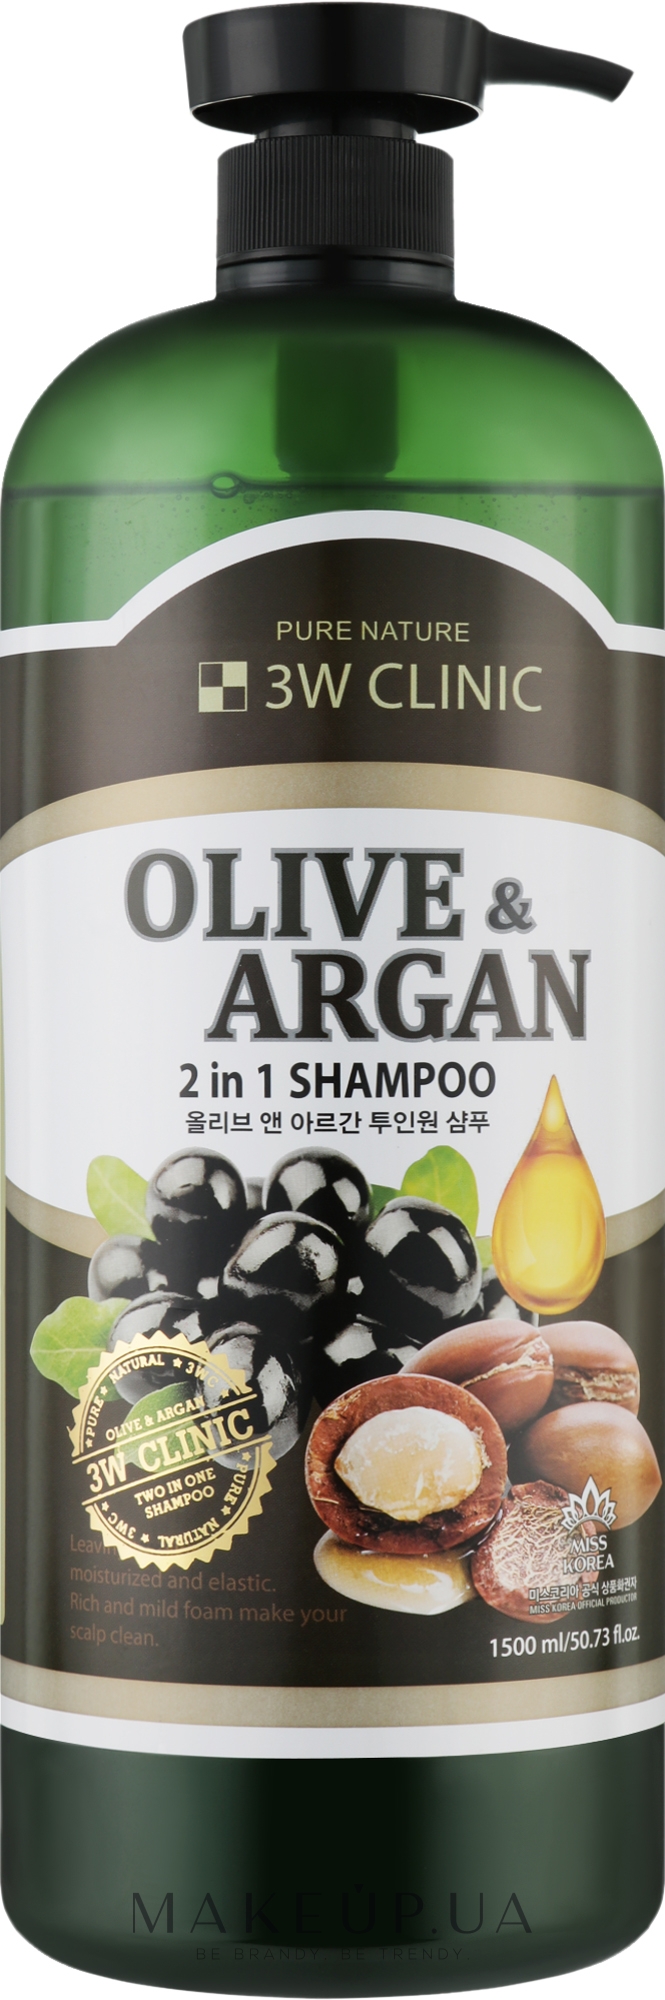 Шампунь для пошкодженого волосся з арганієвою олією та олією оливи - 3W Clinic Plive & Argan 2 In 1 Shampoo — фото 1500ml